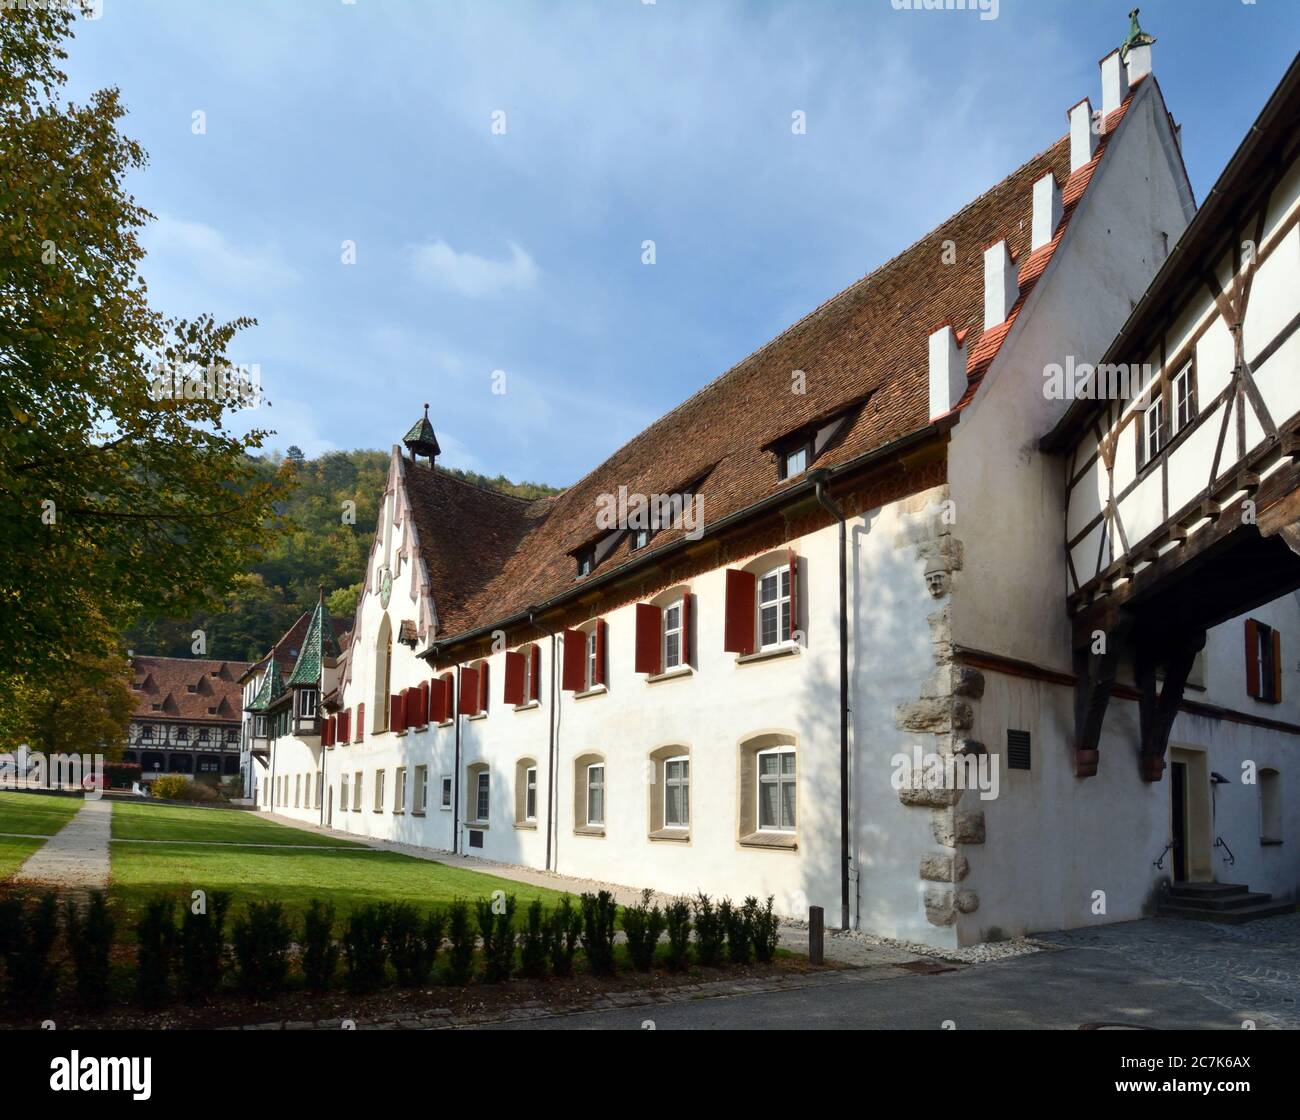 Blaubeuren, Baden-Württemberg, Alemania, el monasterio de Blaubeuren en la ciudad de Blaubeuren, con entramado de madera Foto de stock